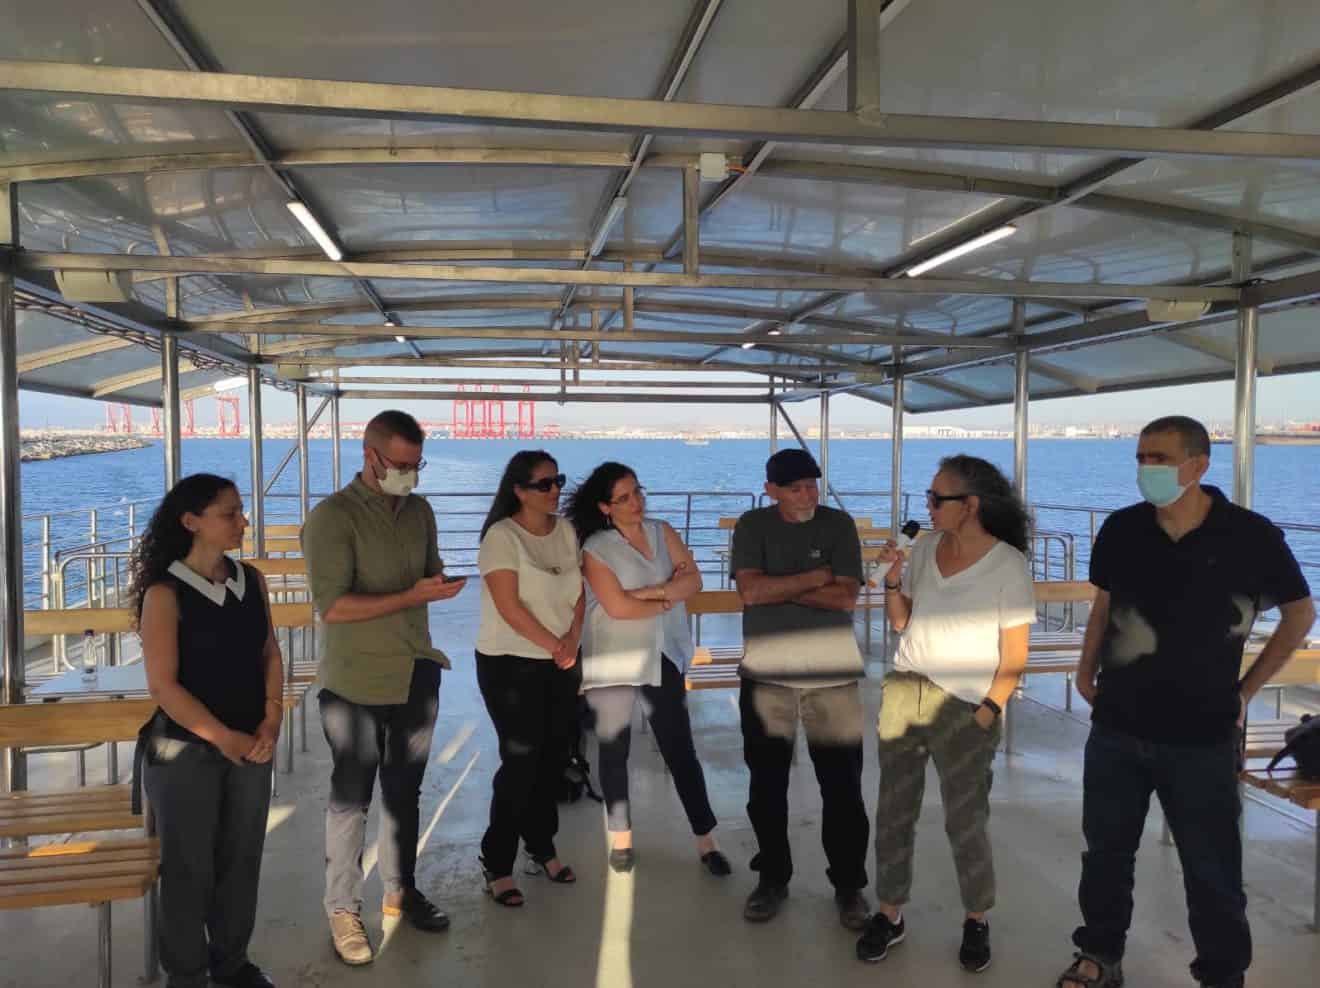 איגוד ערים להגנת הסביבה בחיפה ערך סיור פרלמנטרי במפרץ | צפו